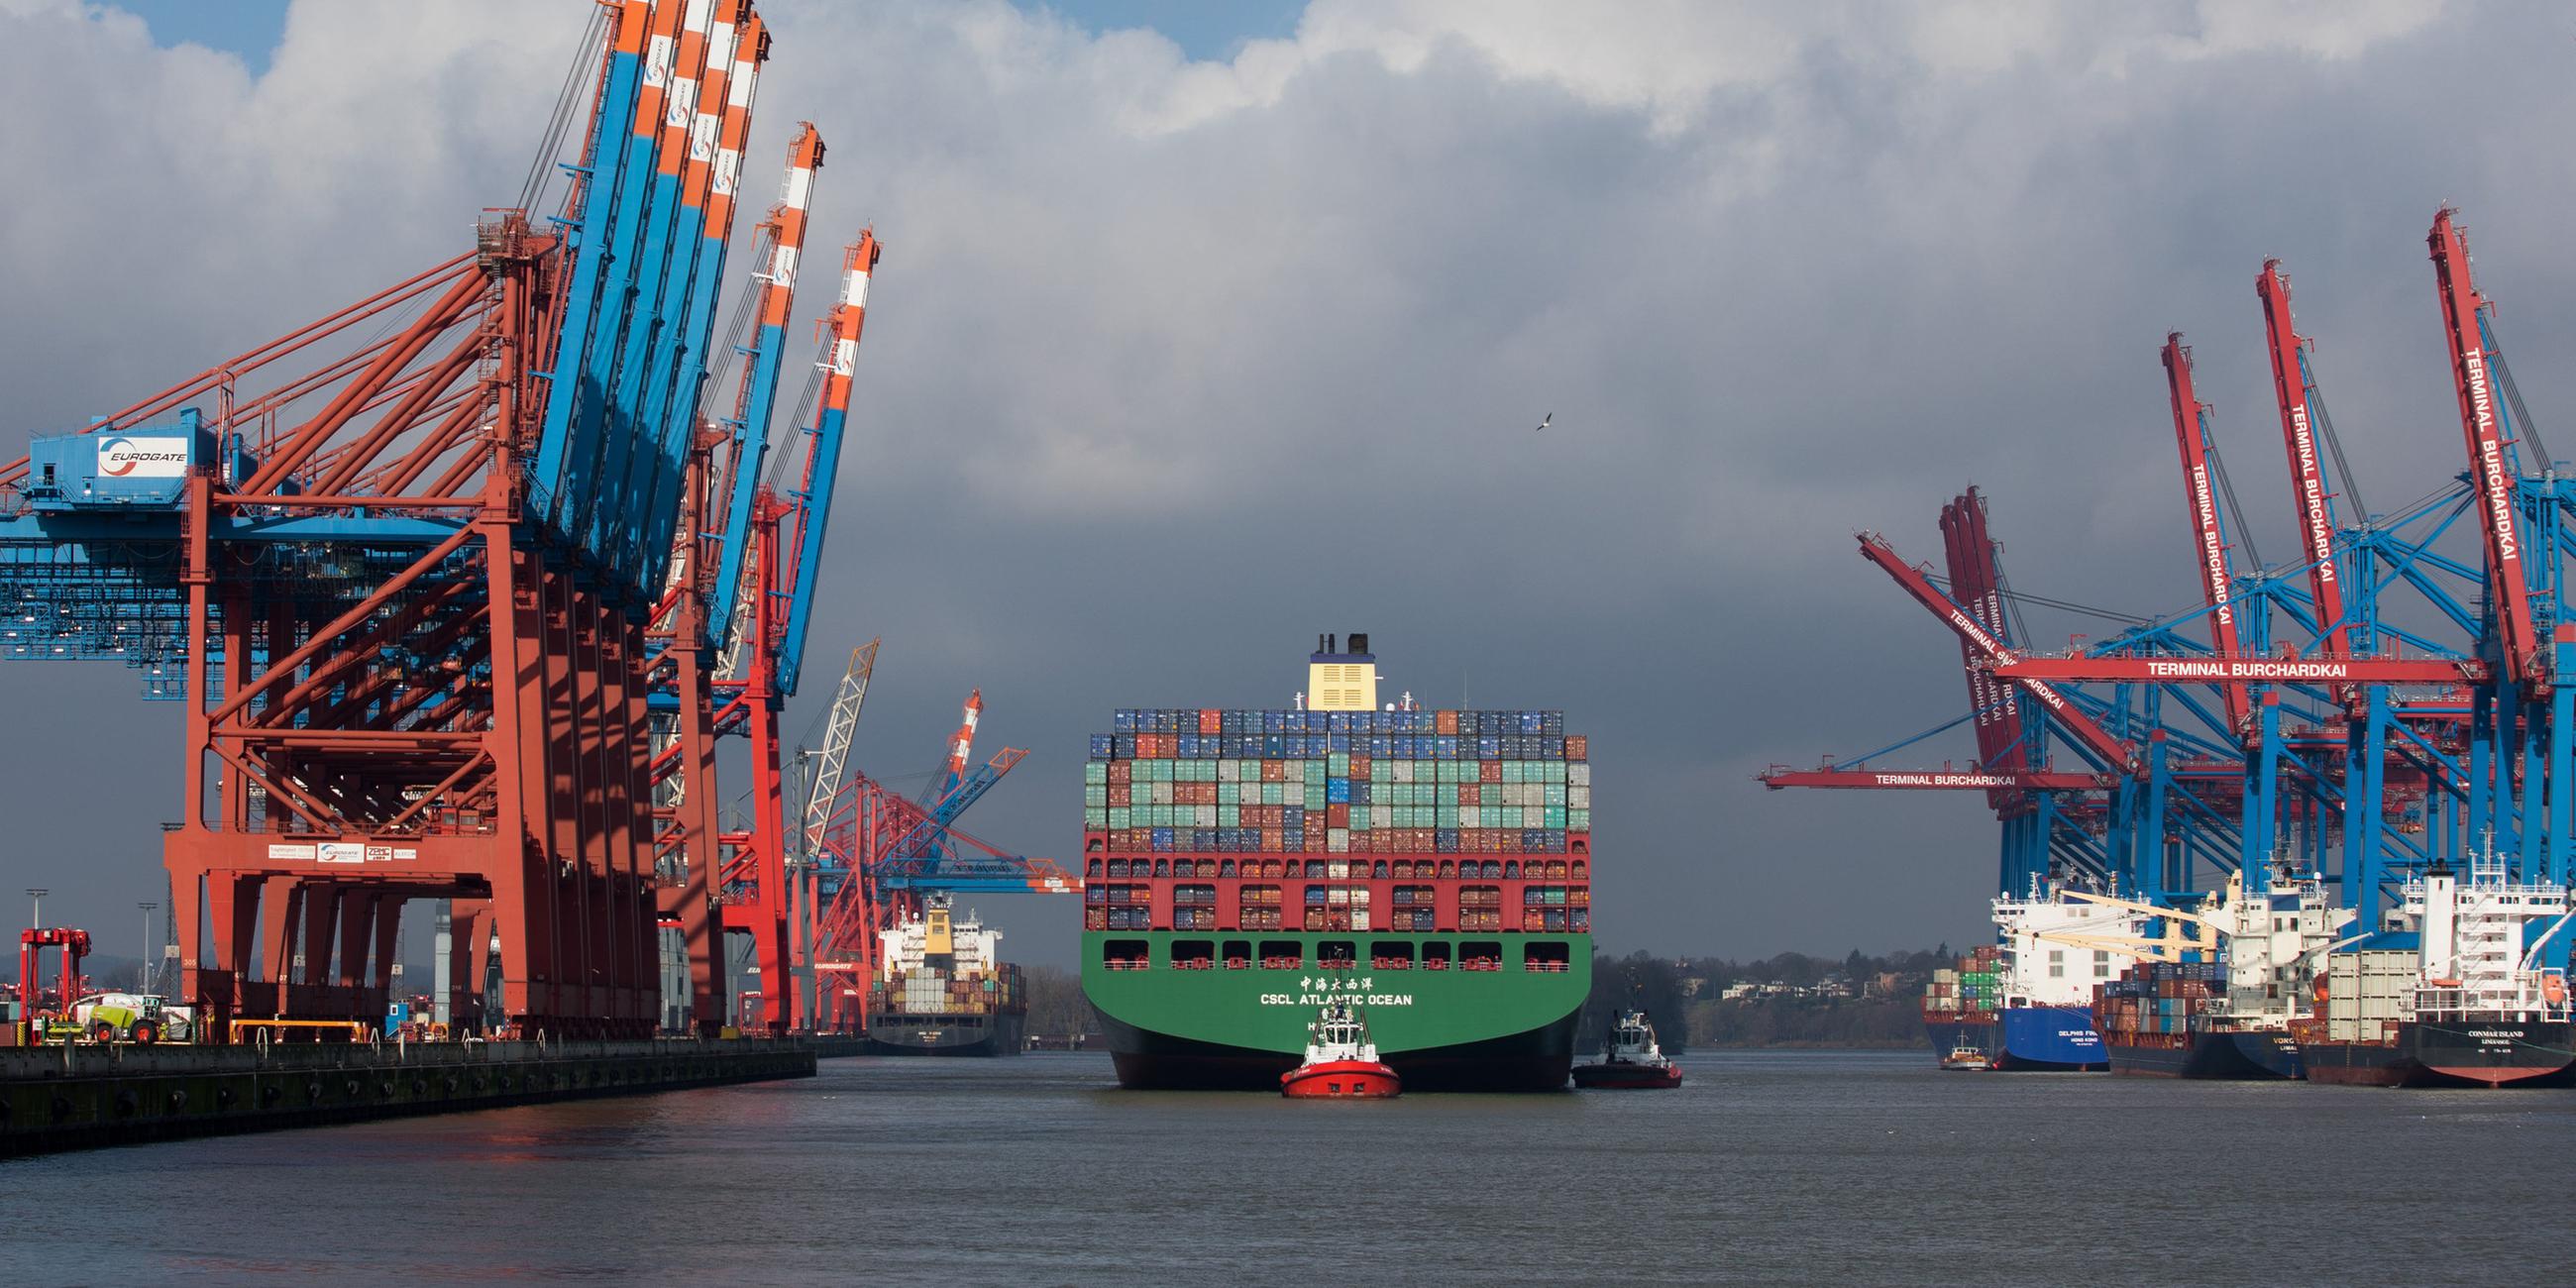 Containerschiff CSCL Atlantik bei Einfahrt in Hamburger Hafen